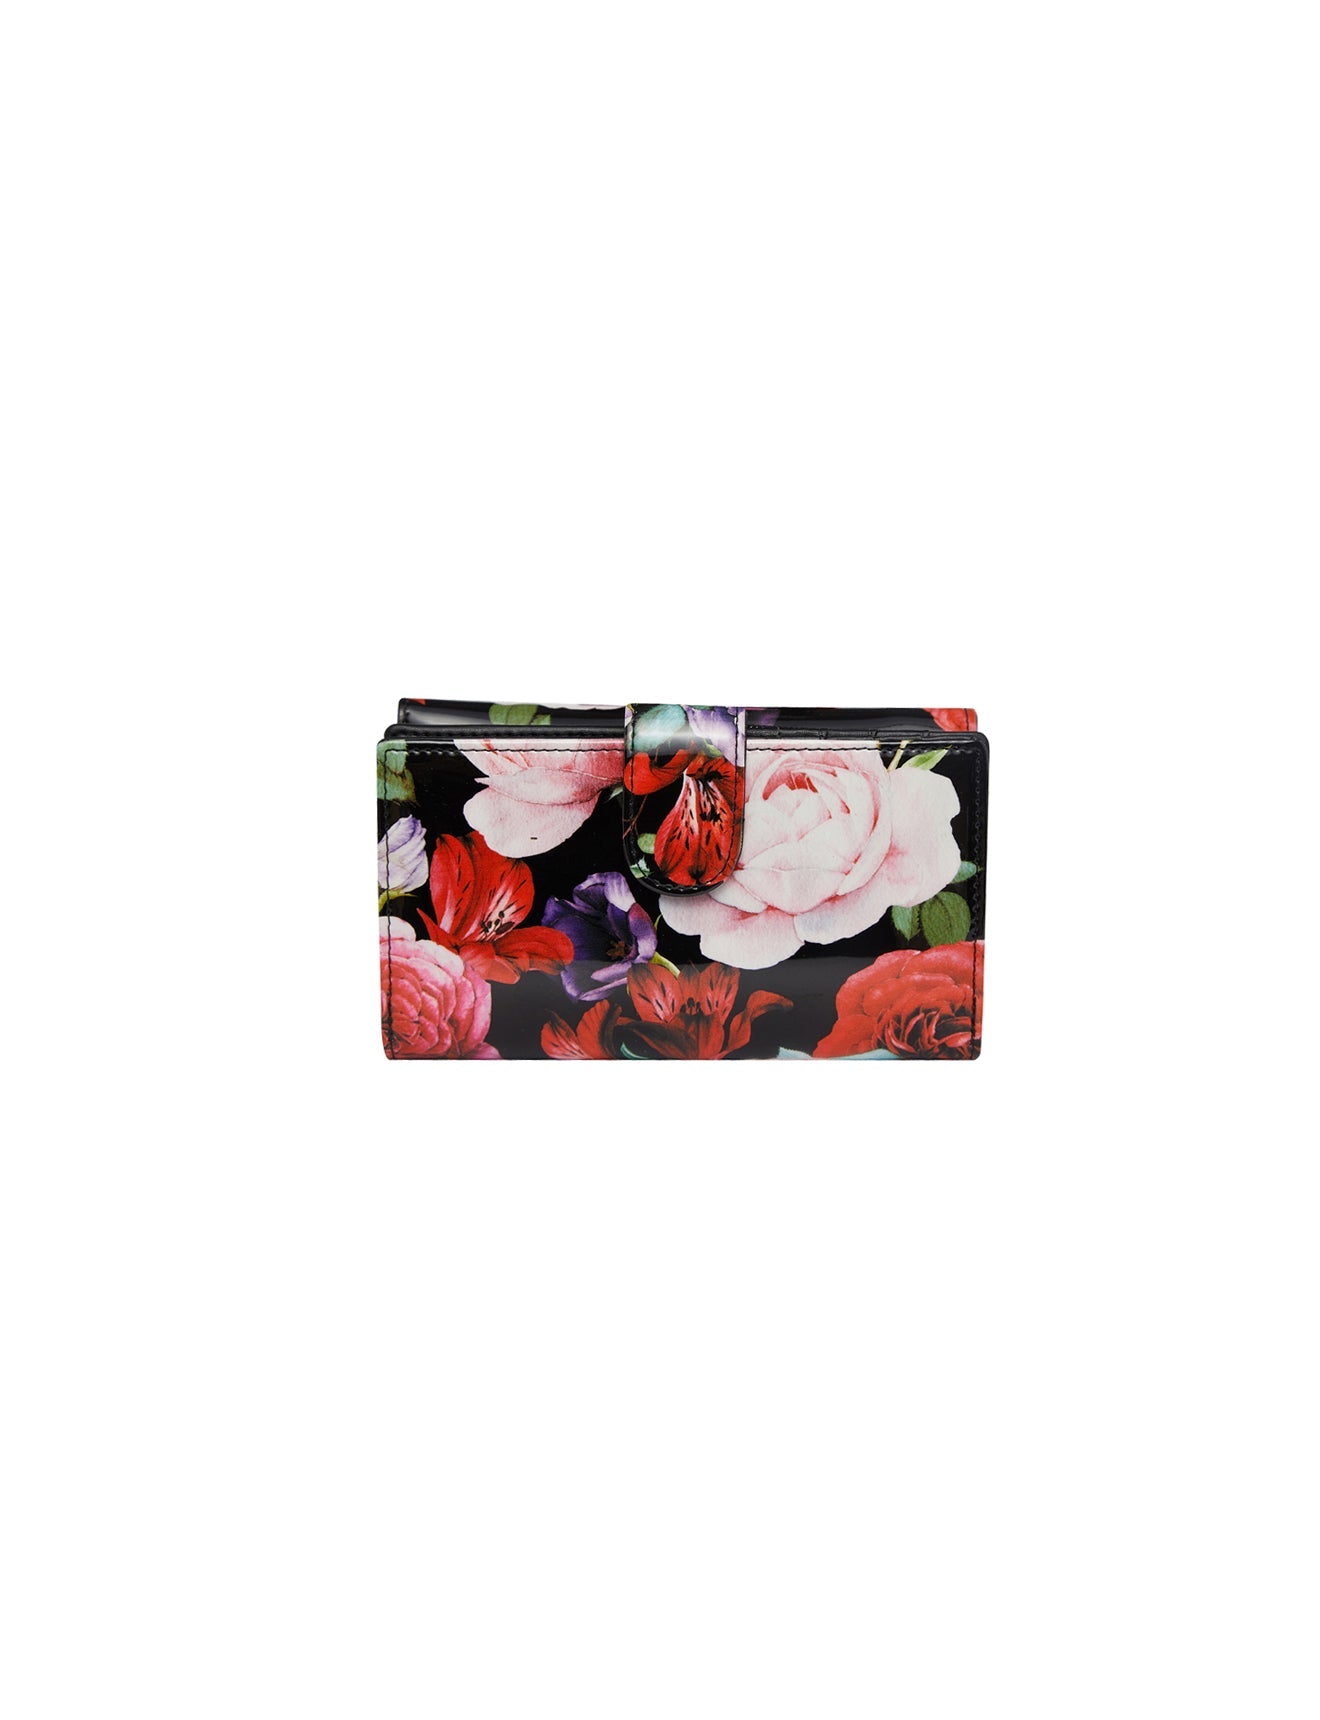 Serenade - Scarlett WSN-4202 Leather Wallet - Medium-2